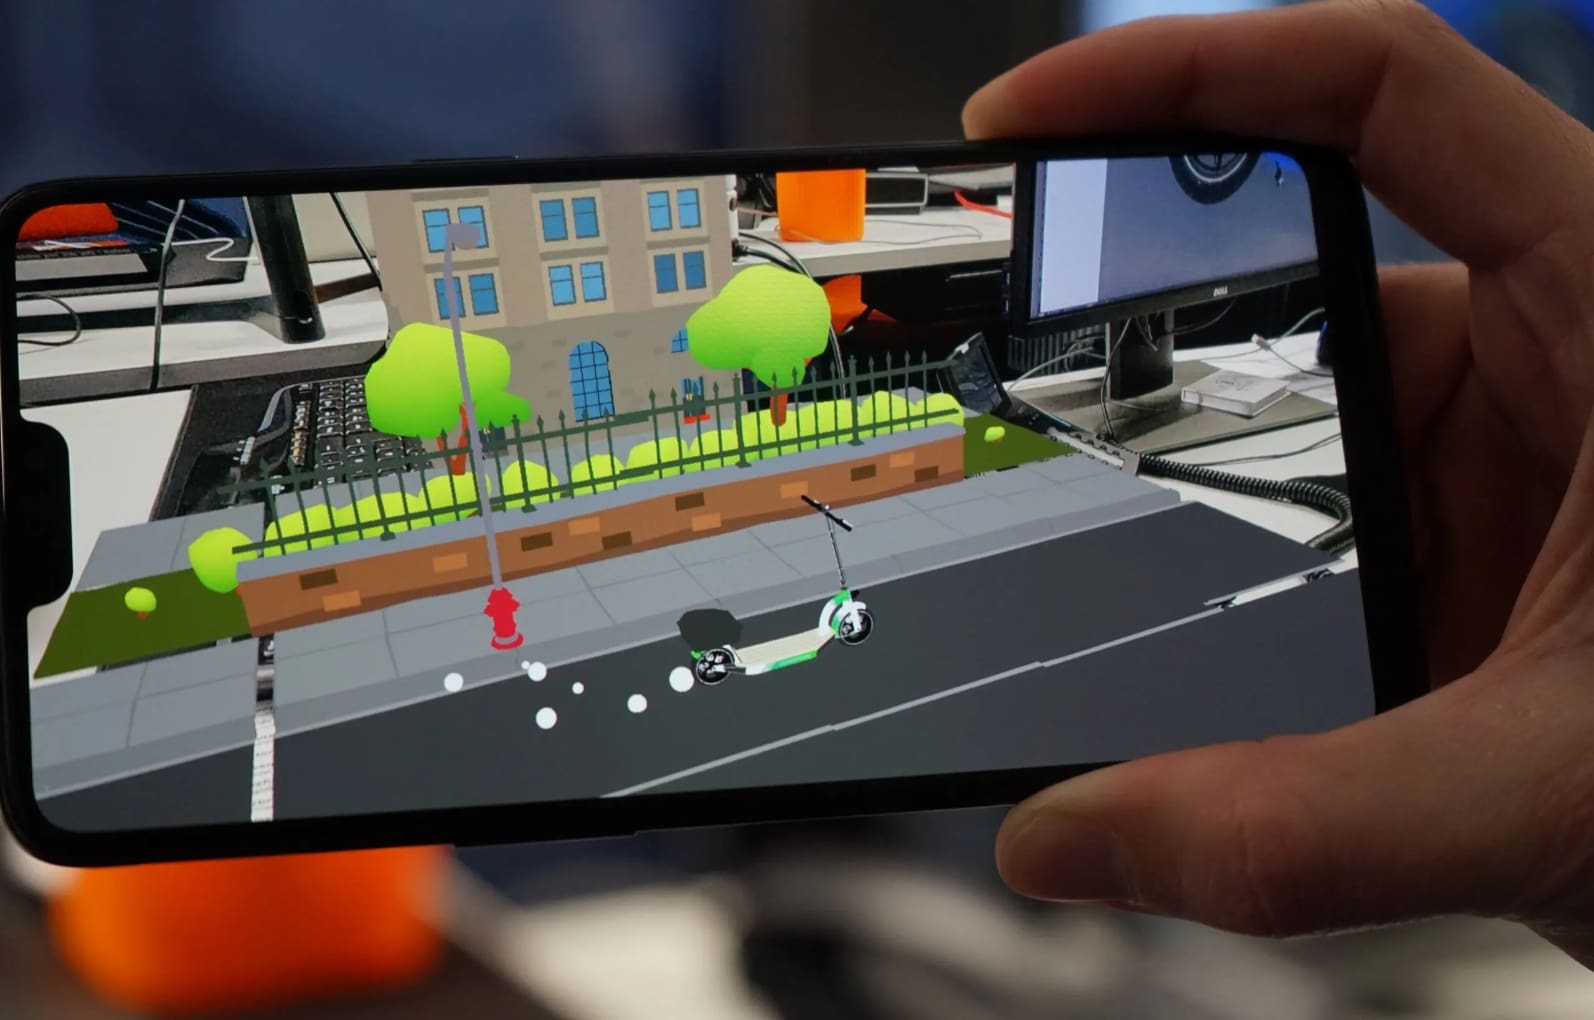 Hände, die ein Smartphone halten, das eine Augmented Reality (AR)-Anwendung zeigt, bei der virtuelle Objekte in eine reale Umgebung integriert werden, ein Crossover zwischen AR und VR-Technologien.